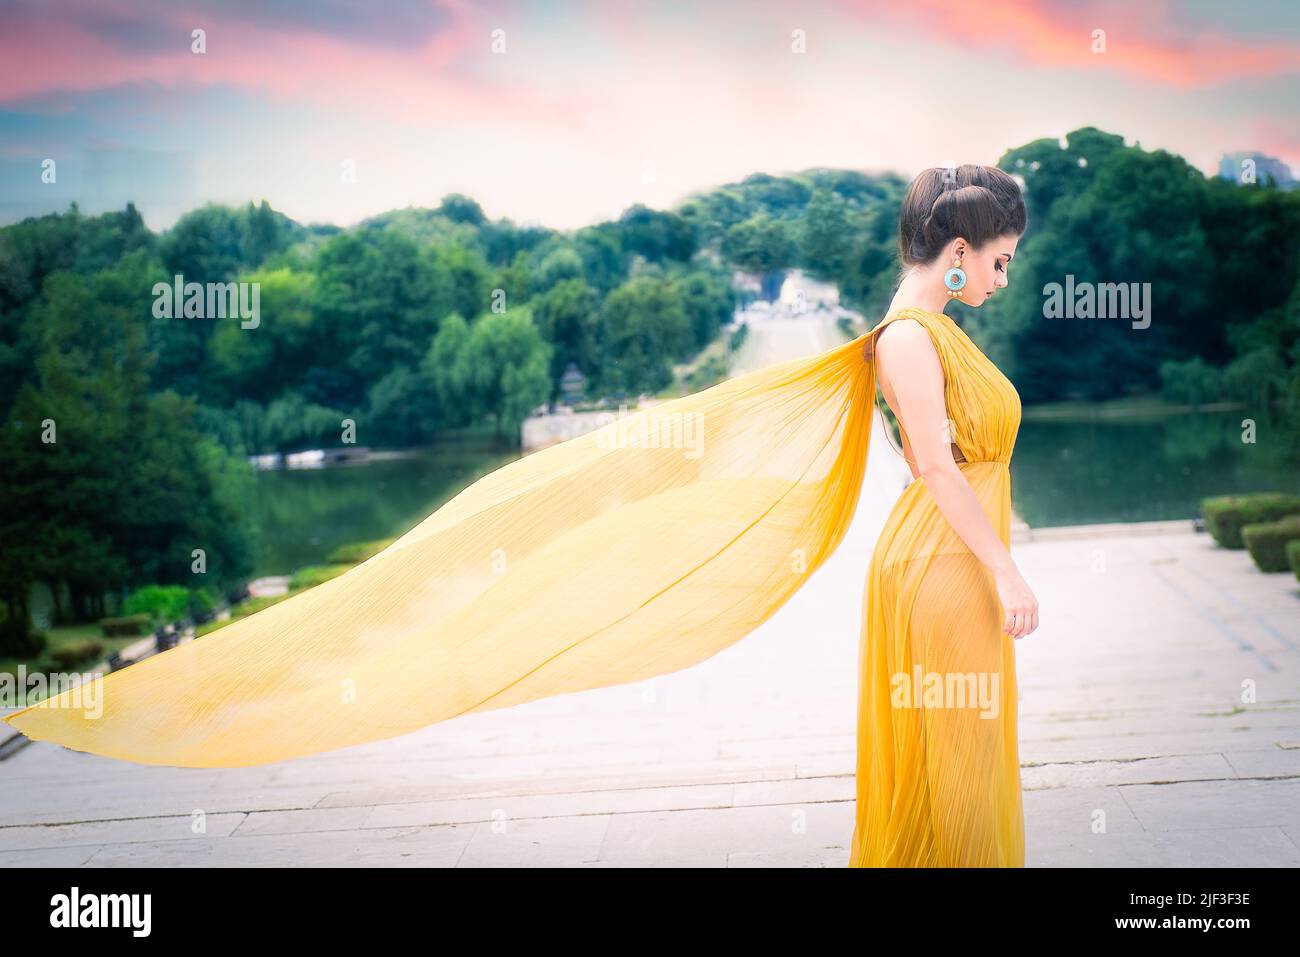 Schönes weibliches Modell mit langem gelben Seidenkleid, das wie Flügel im Wind fliegt und im Profil auf der Treppe im Park steht. Panoramafenster Stockfoto